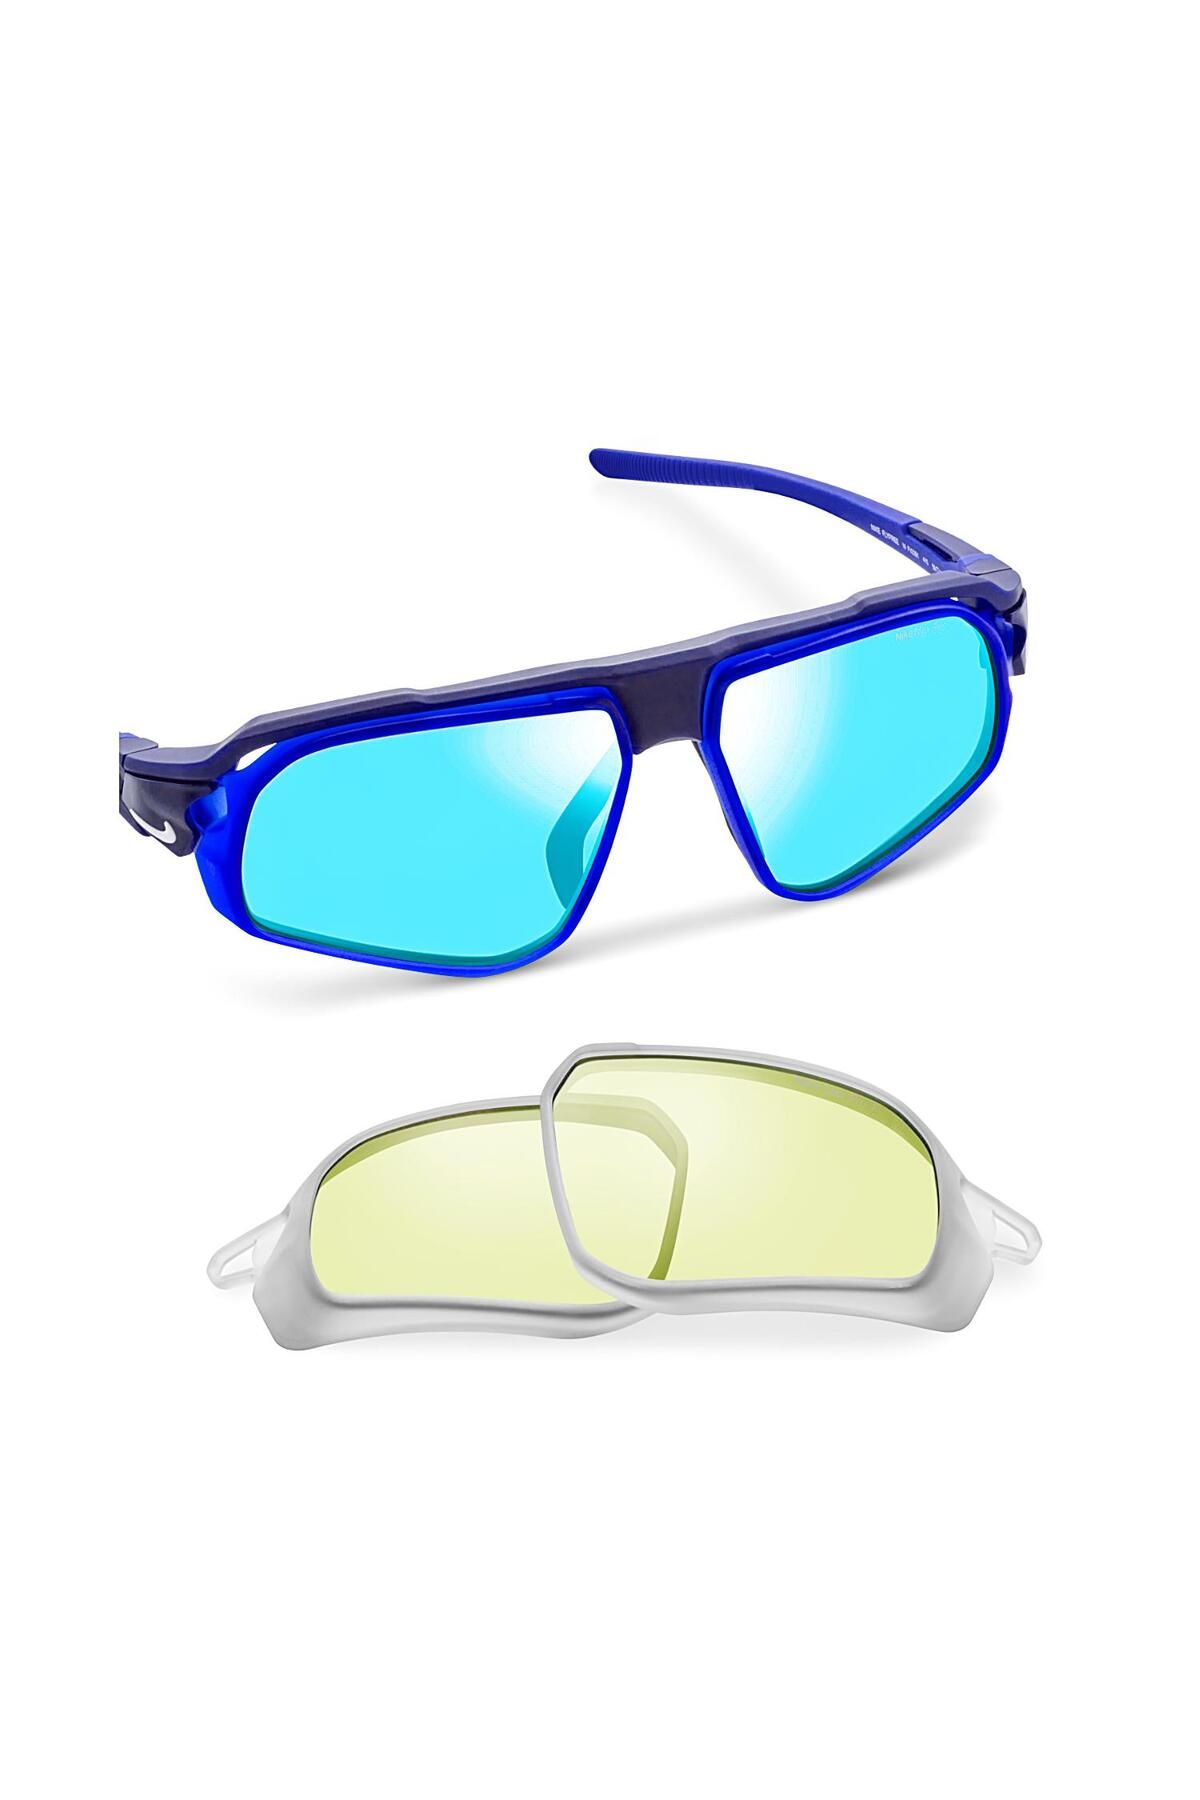 Nike Flyfree M FV2391 410 59 Outdoor Mavi Aynalı Değiştirilebilir Camlı Lacivert Güneş Gözlüğü